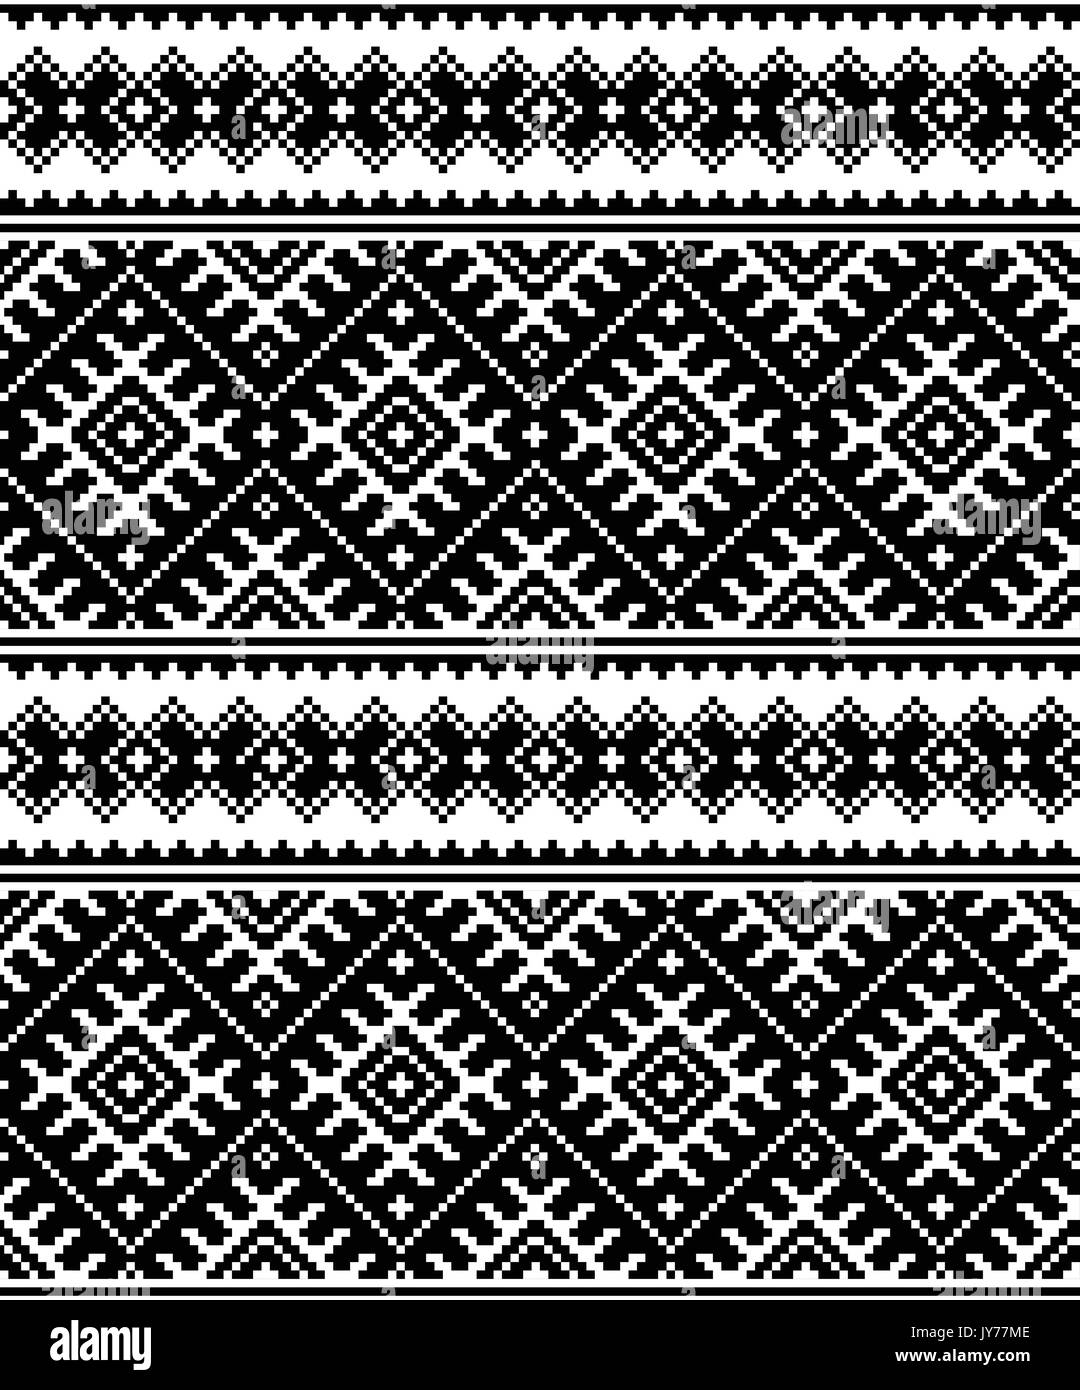 Volkskunst schwarz nahtlose Muster aus der Ukraine und Weißrussland geometrische Ukrainische oder Weißrussische traditionelle Muster - Monochrom vektor design Stock Vektor